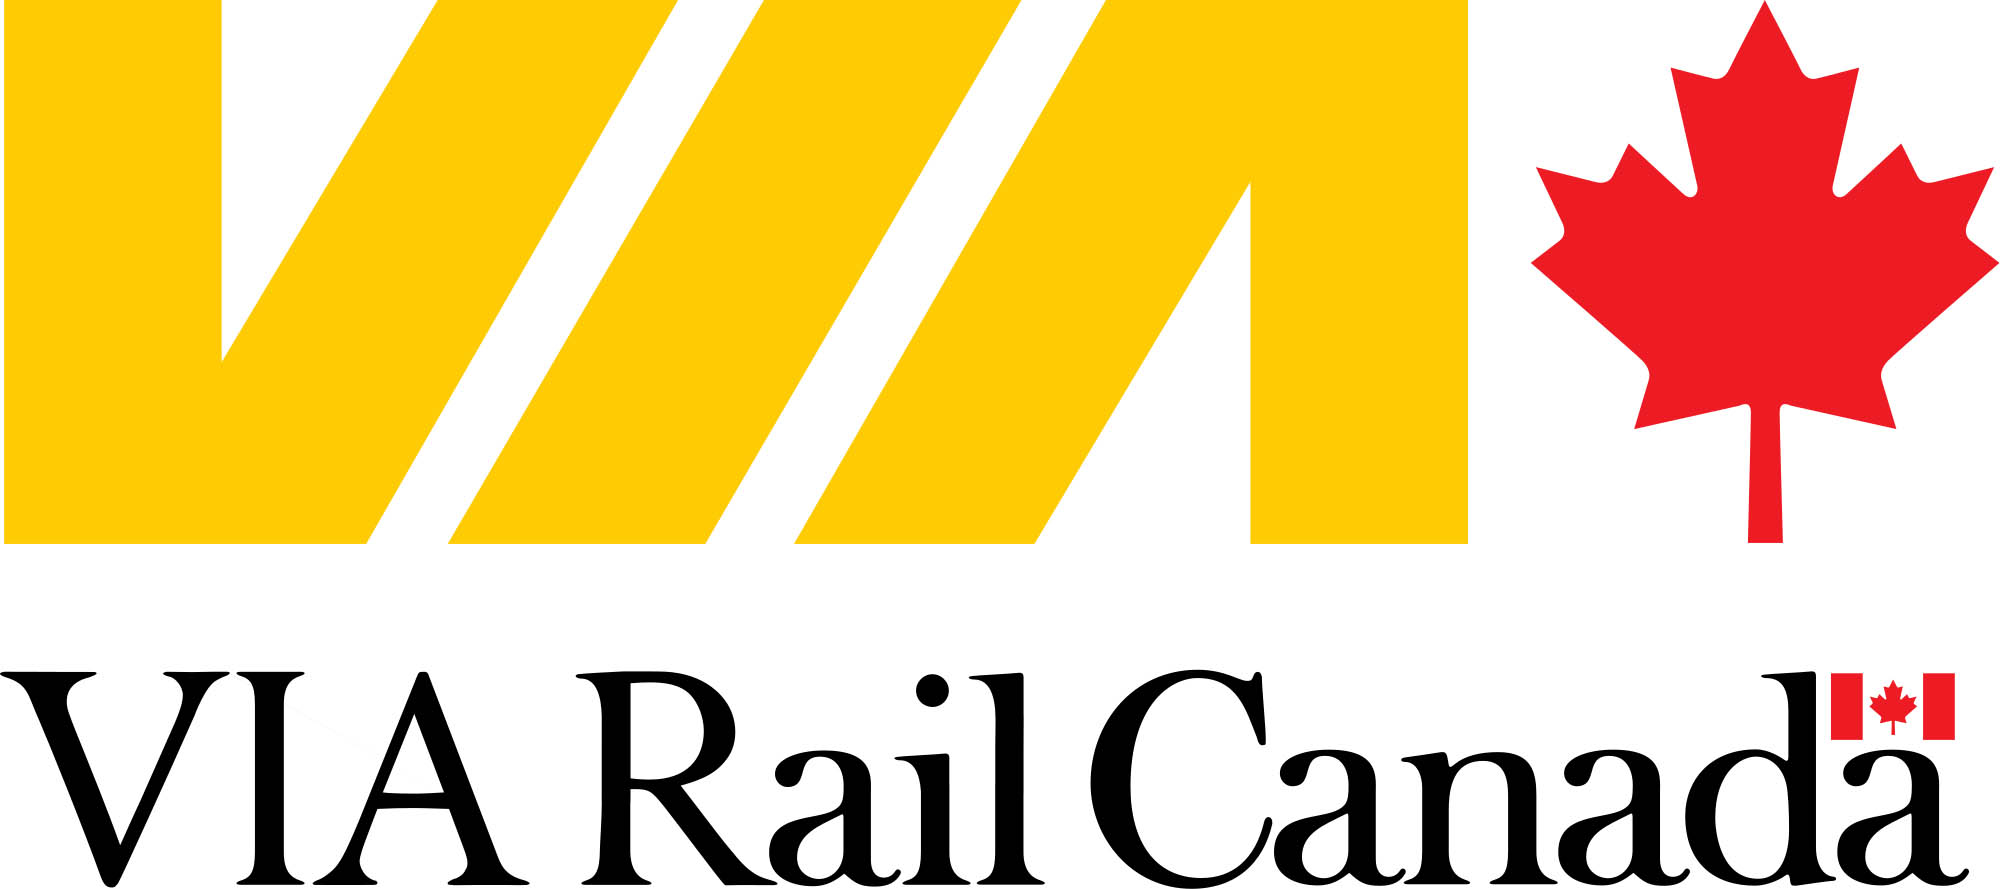 VIA Rail Canada-2.jpg